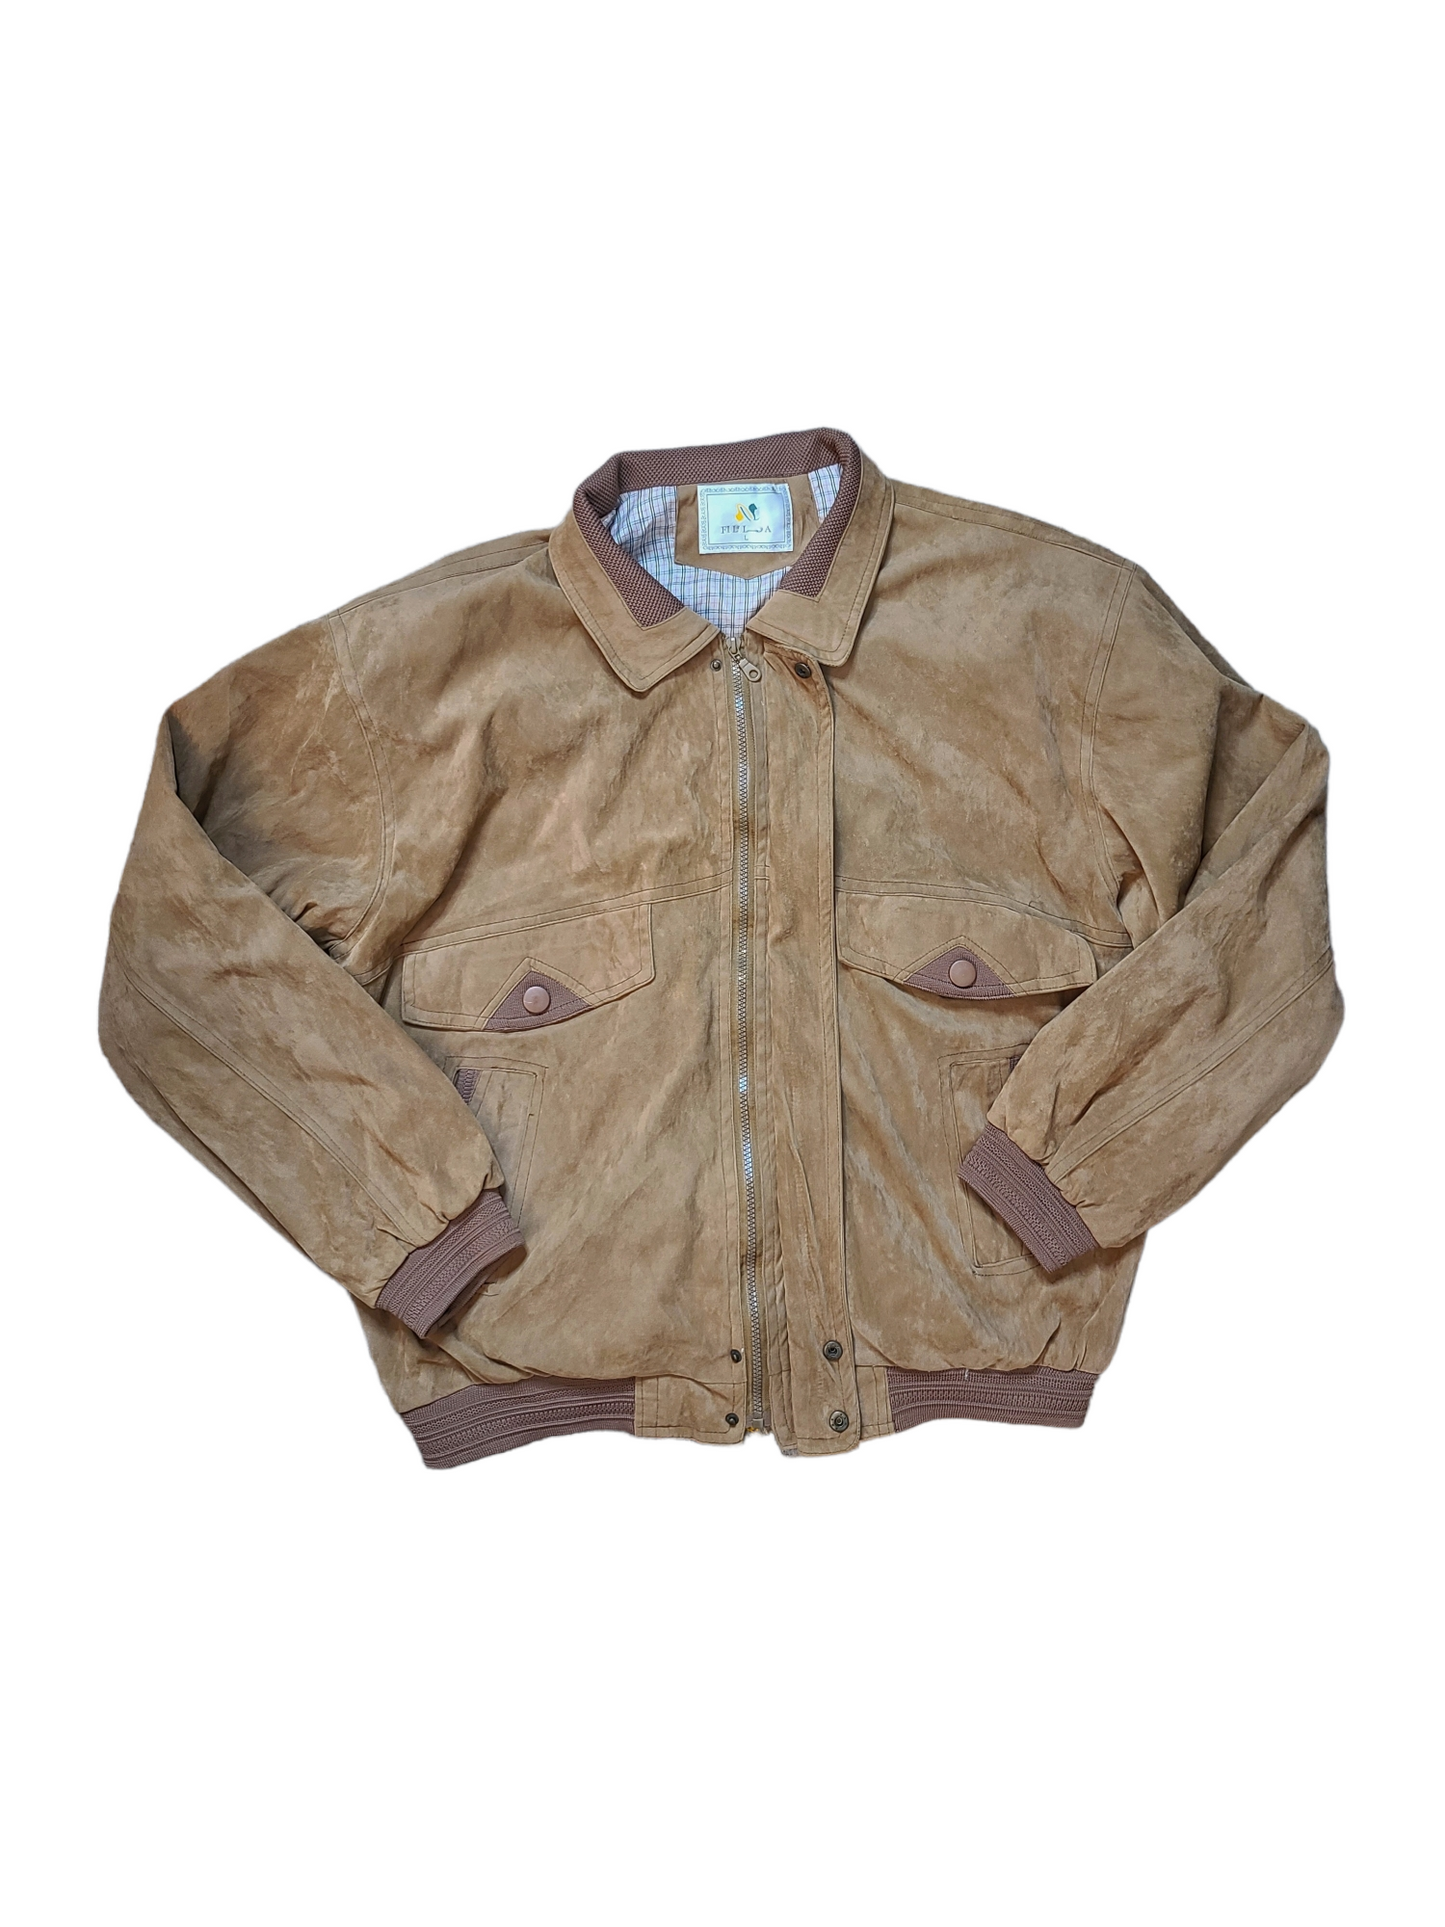 Oversize 90s jacket grunge veste vintage blouson daim 